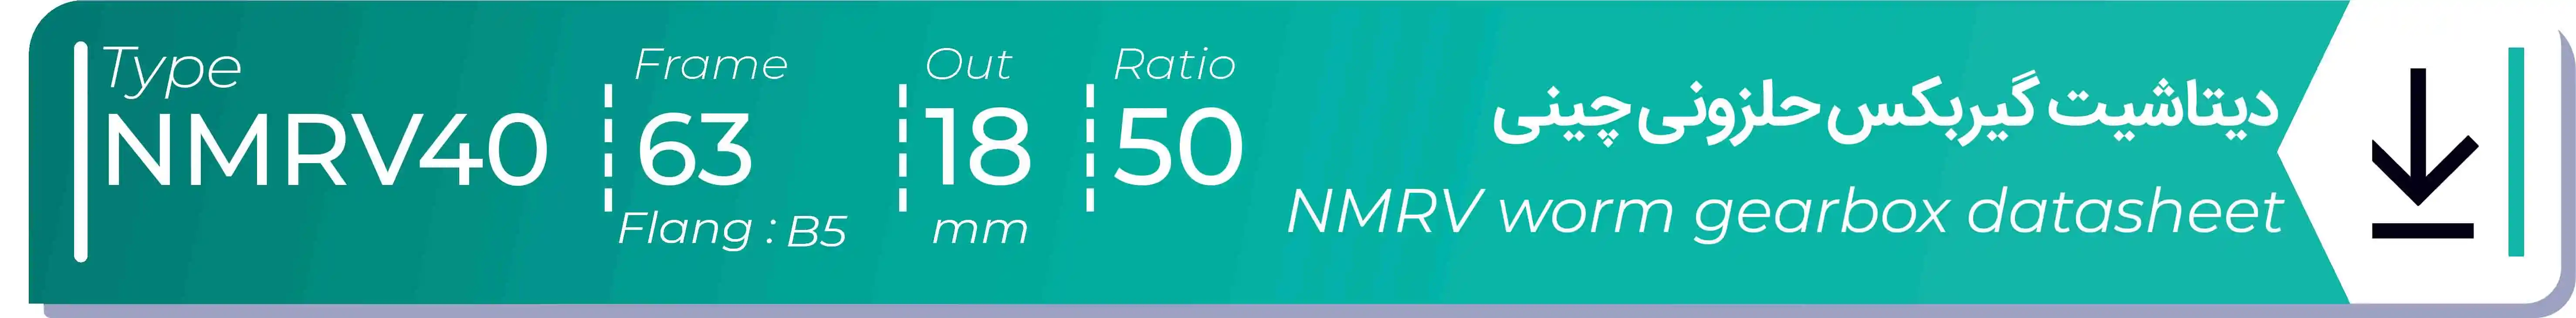  دیتاشیت و مشخصات فنی گیربکس حلزونی چینی   NMRV40  -  با خروجی 18- میلی متر و نسبت50 و فریم 63